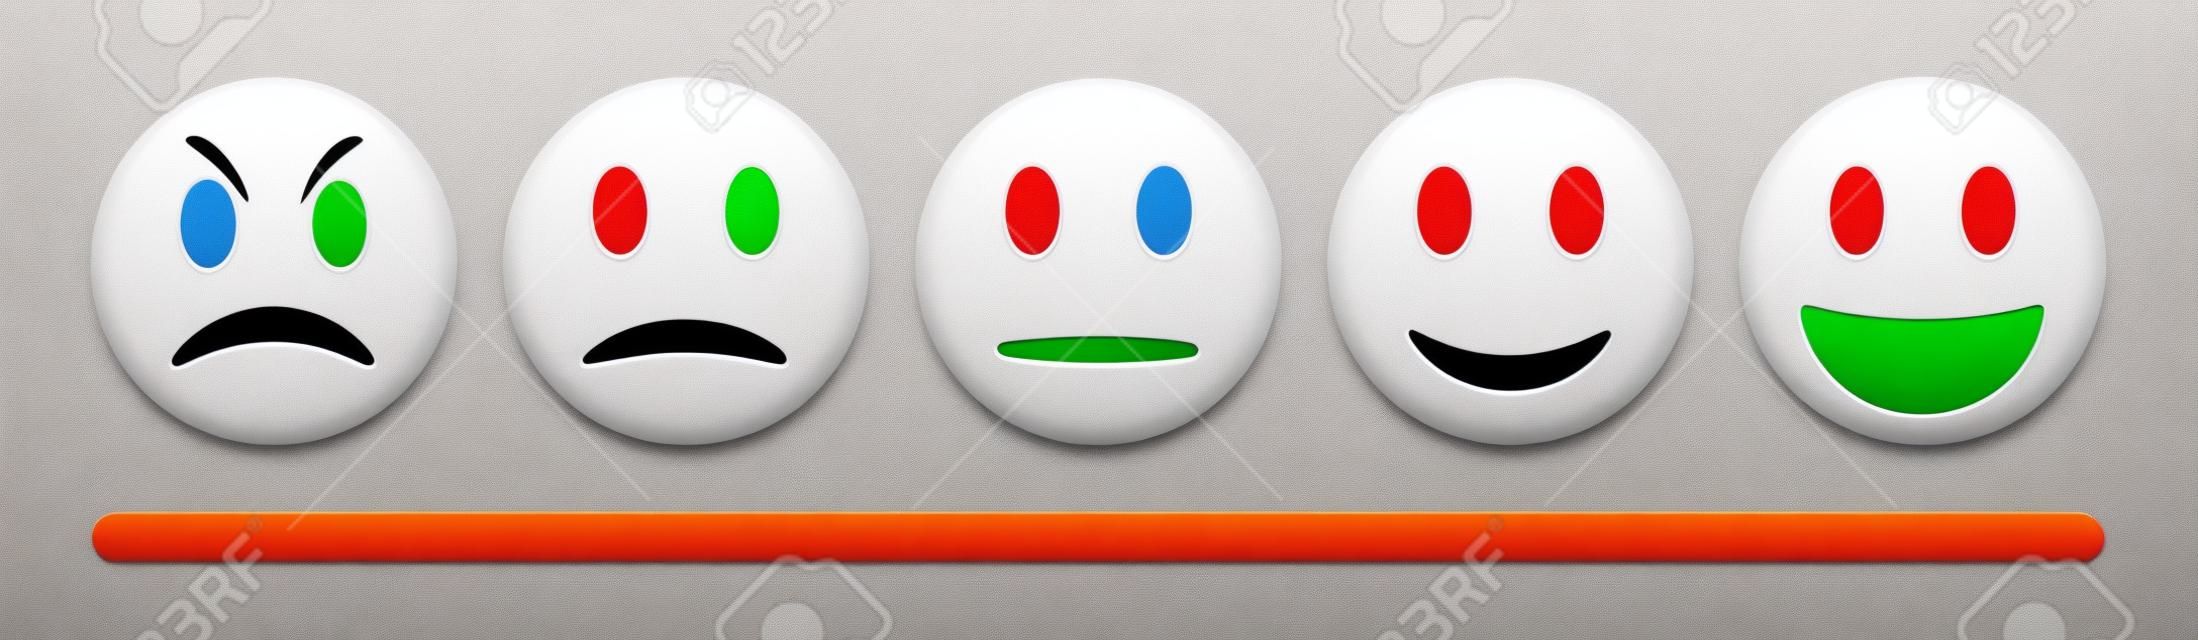 Escala de feedback de emoção do vetor no fundo branco. Conjunto de emoticon irritado, triste, neutro e feliz. Vermelho brilhante, laranja, amarelo e verde engraçado desenho animado ícone Emoji. Ilustração 3D